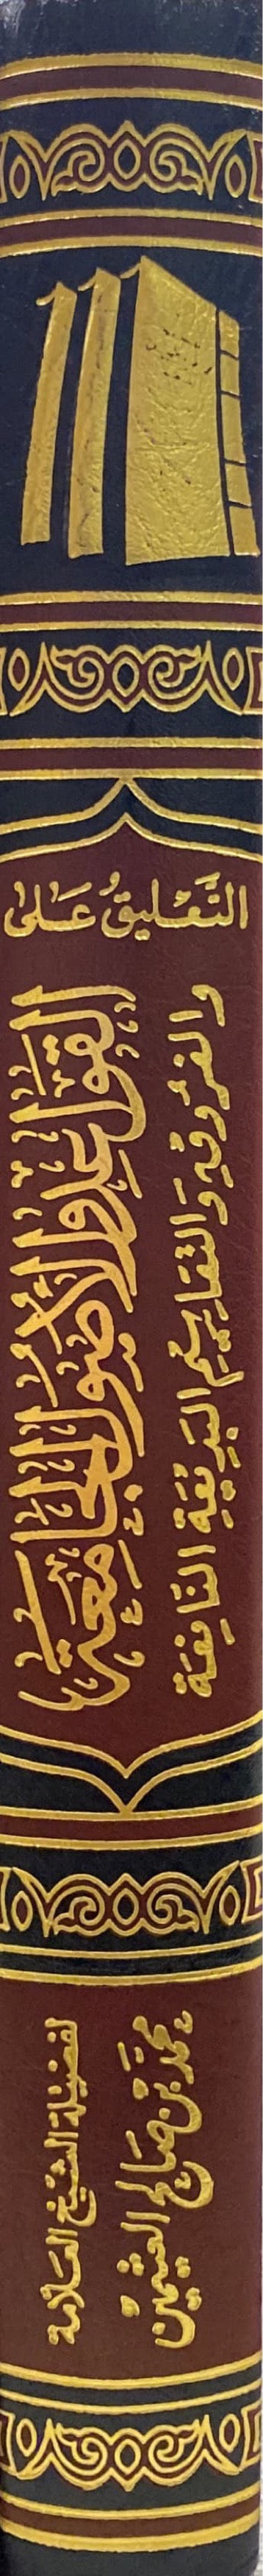 التعليق على كتاب القواعد والاصول الجامعة At Taliq Ala Kitab Al Qawaid Wal Usul Al Jaamia